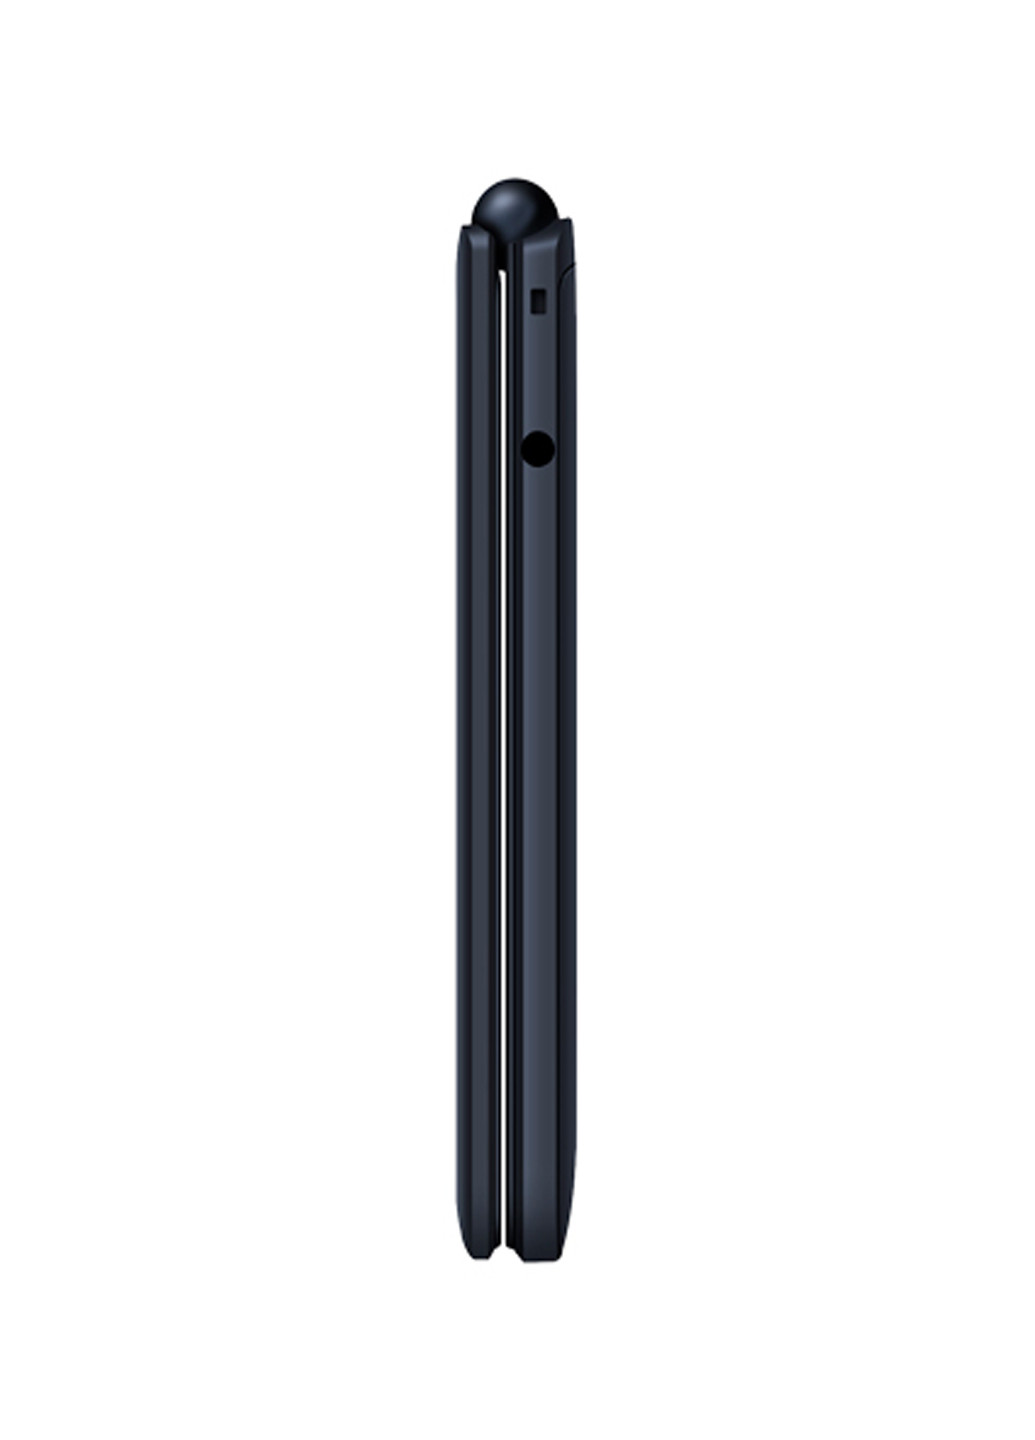 Мобильный телефон Sigma mobile x-style 28 flip blue (4827798524626) (130909590)